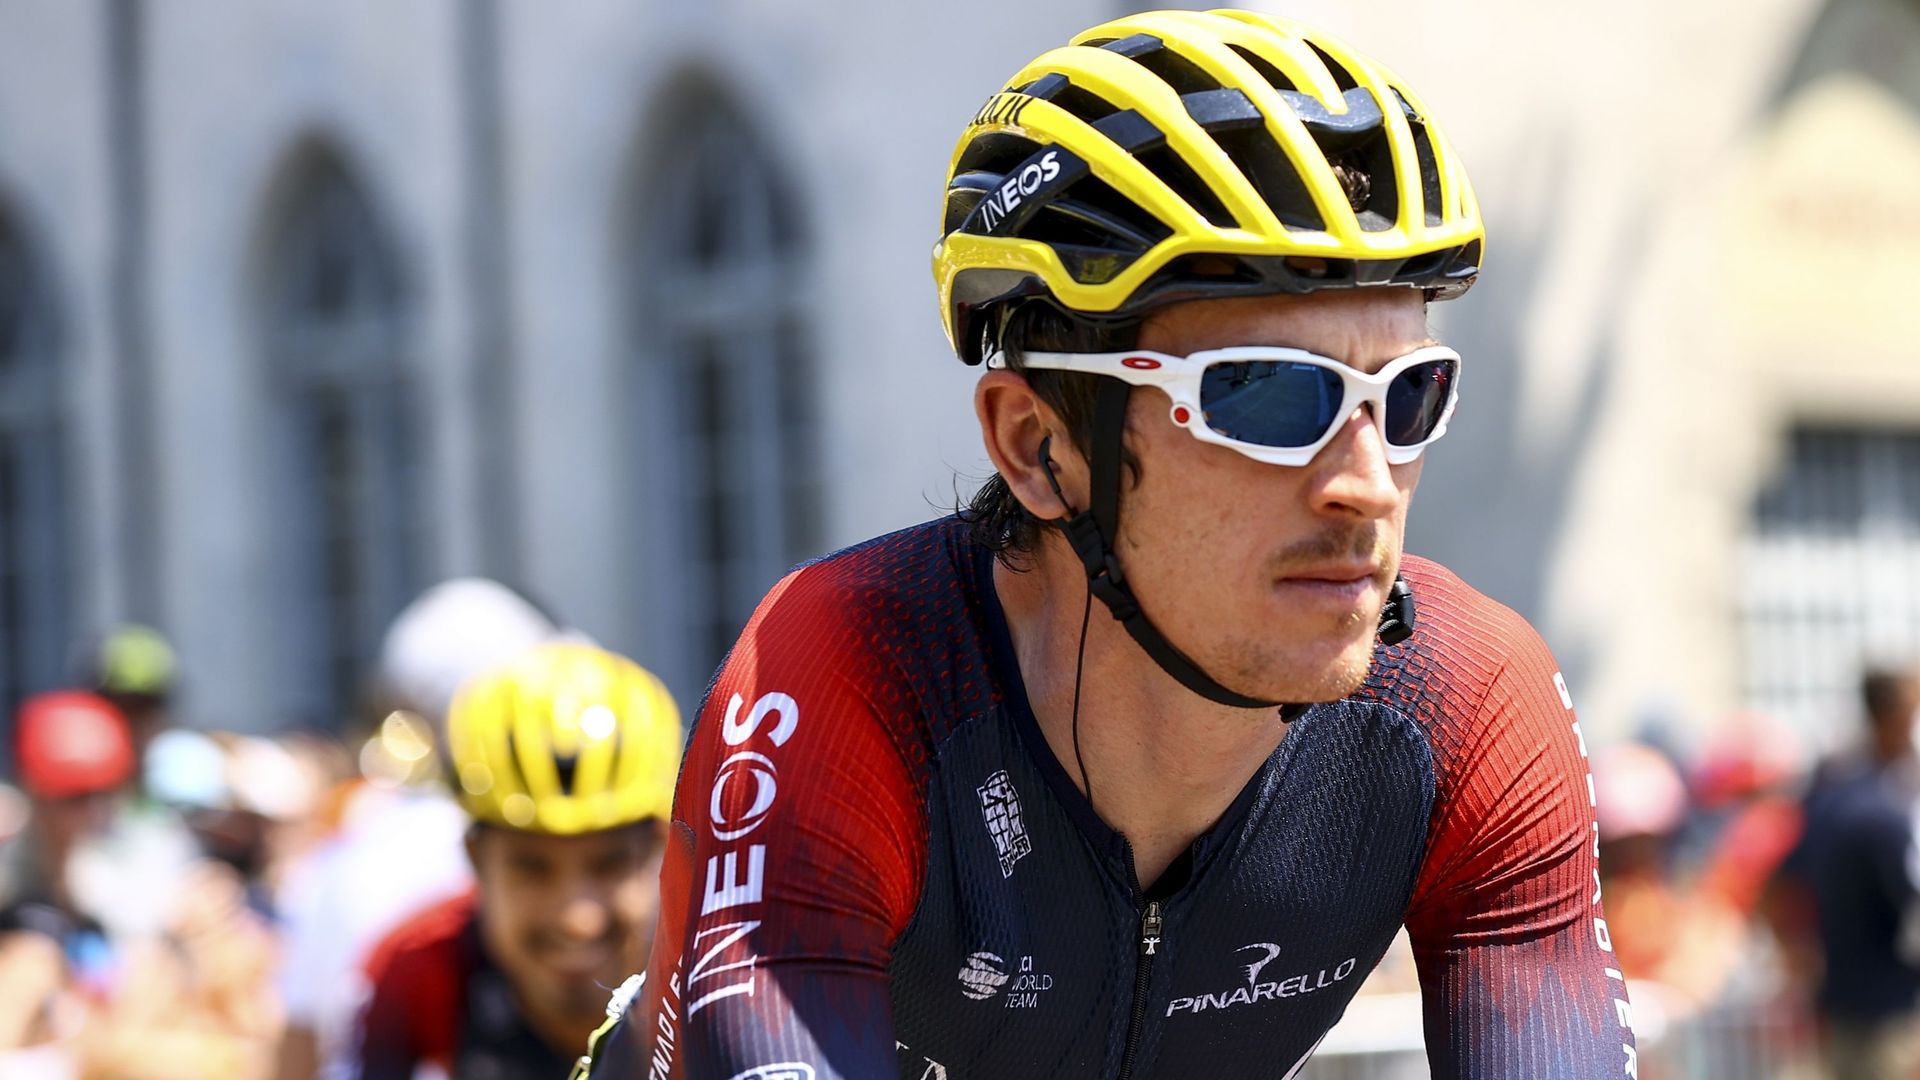 Geraint Thomas (INEOS Grenadiers) participera au Tour d’Italie en 2023. Le coureur gallois, vainqueur du Tour de France en 2018, en a fait l’annonce en publiant une vidéo sur son compte Twitter. Il fera donc partie des prétendants à la victoire finale, av